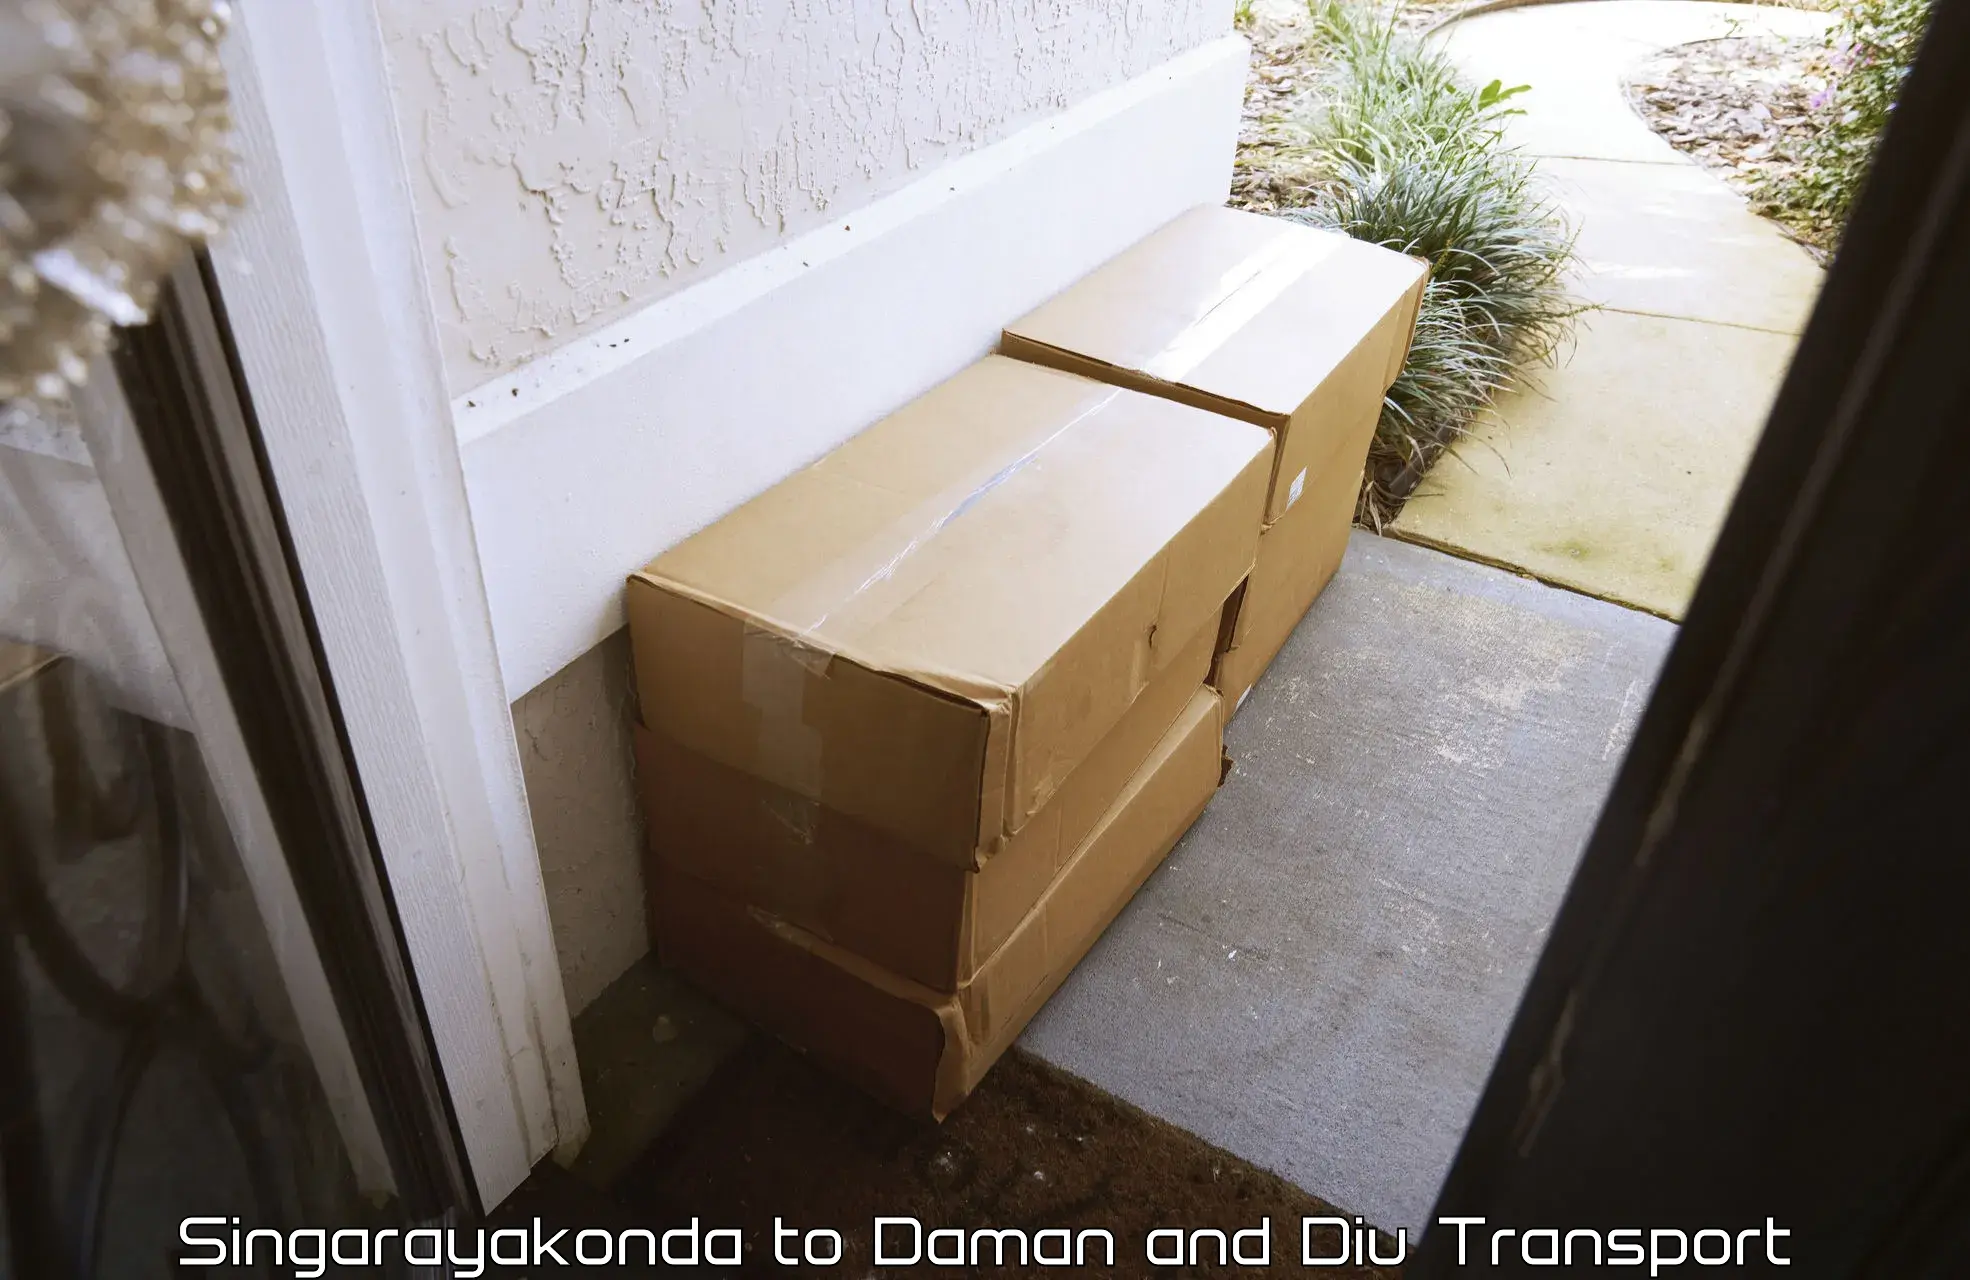 Container transportation services Singarayakonda to Daman and Diu